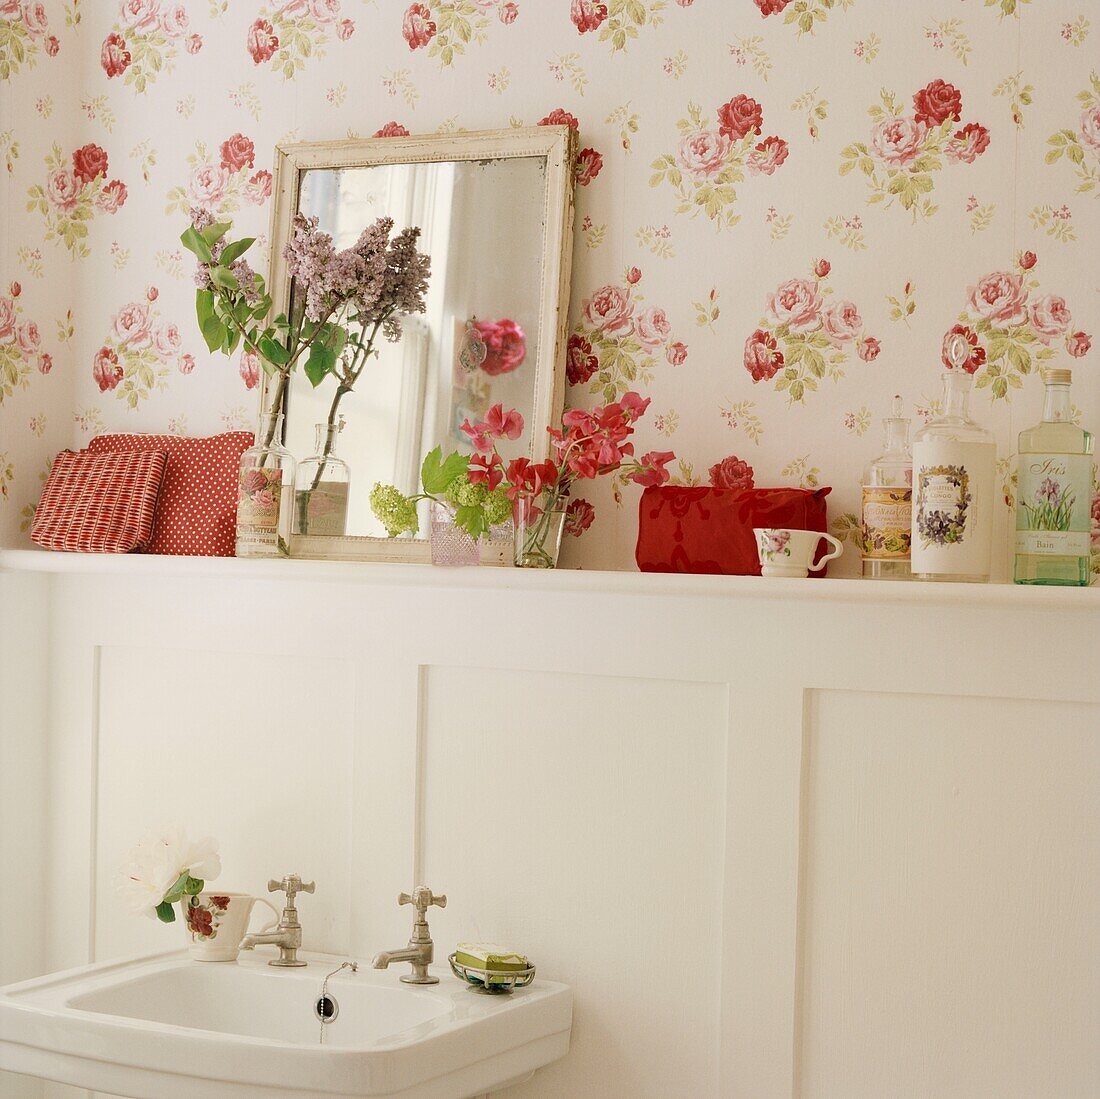 Schnittblumen und Toilettenartikel auf einem Badezimmerregal mit Blümchentapete und Spiegel